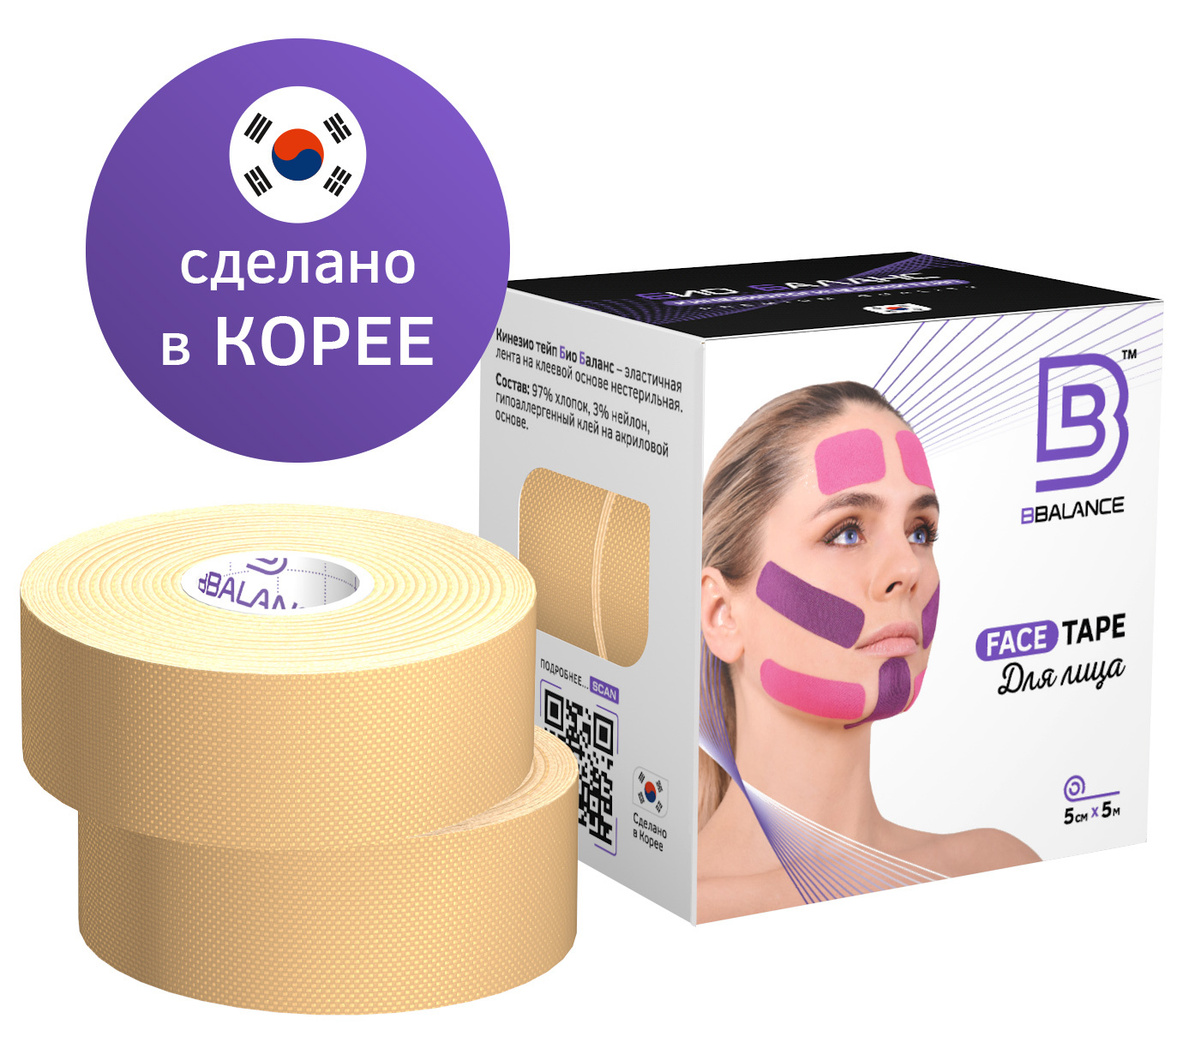 Кинезиотейп BBalance Tape (BBtape) Face Pack хлопок 2.5см #1